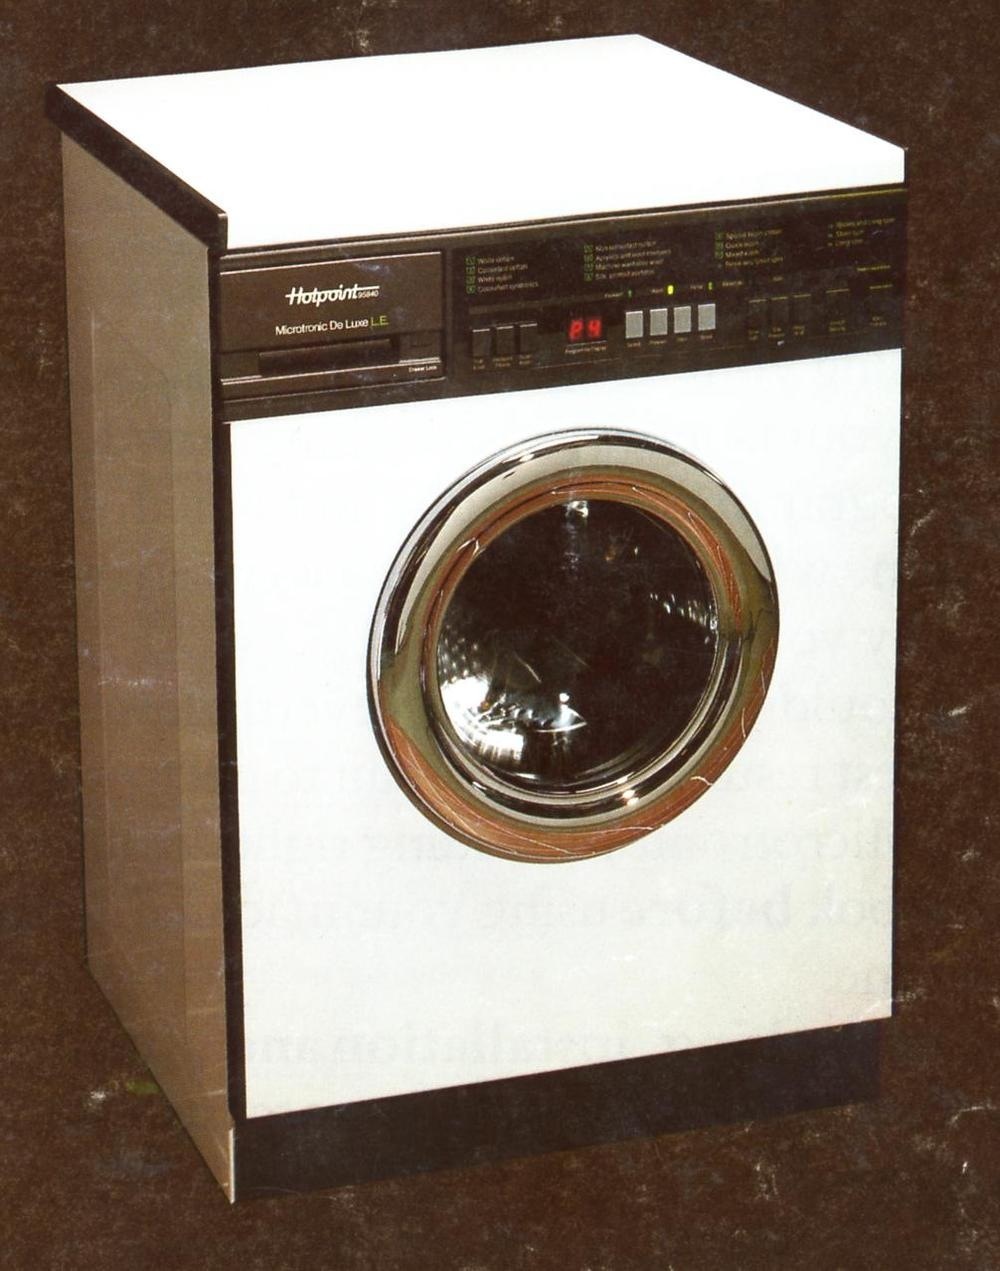 Первые стиральные машины автомат. Стиральная машина Miele 1980. Стиральная машинка Алма Ата. Constructa CV 8370 стиральная машина 1980 год. Стиральная машина Miele 1980-х.